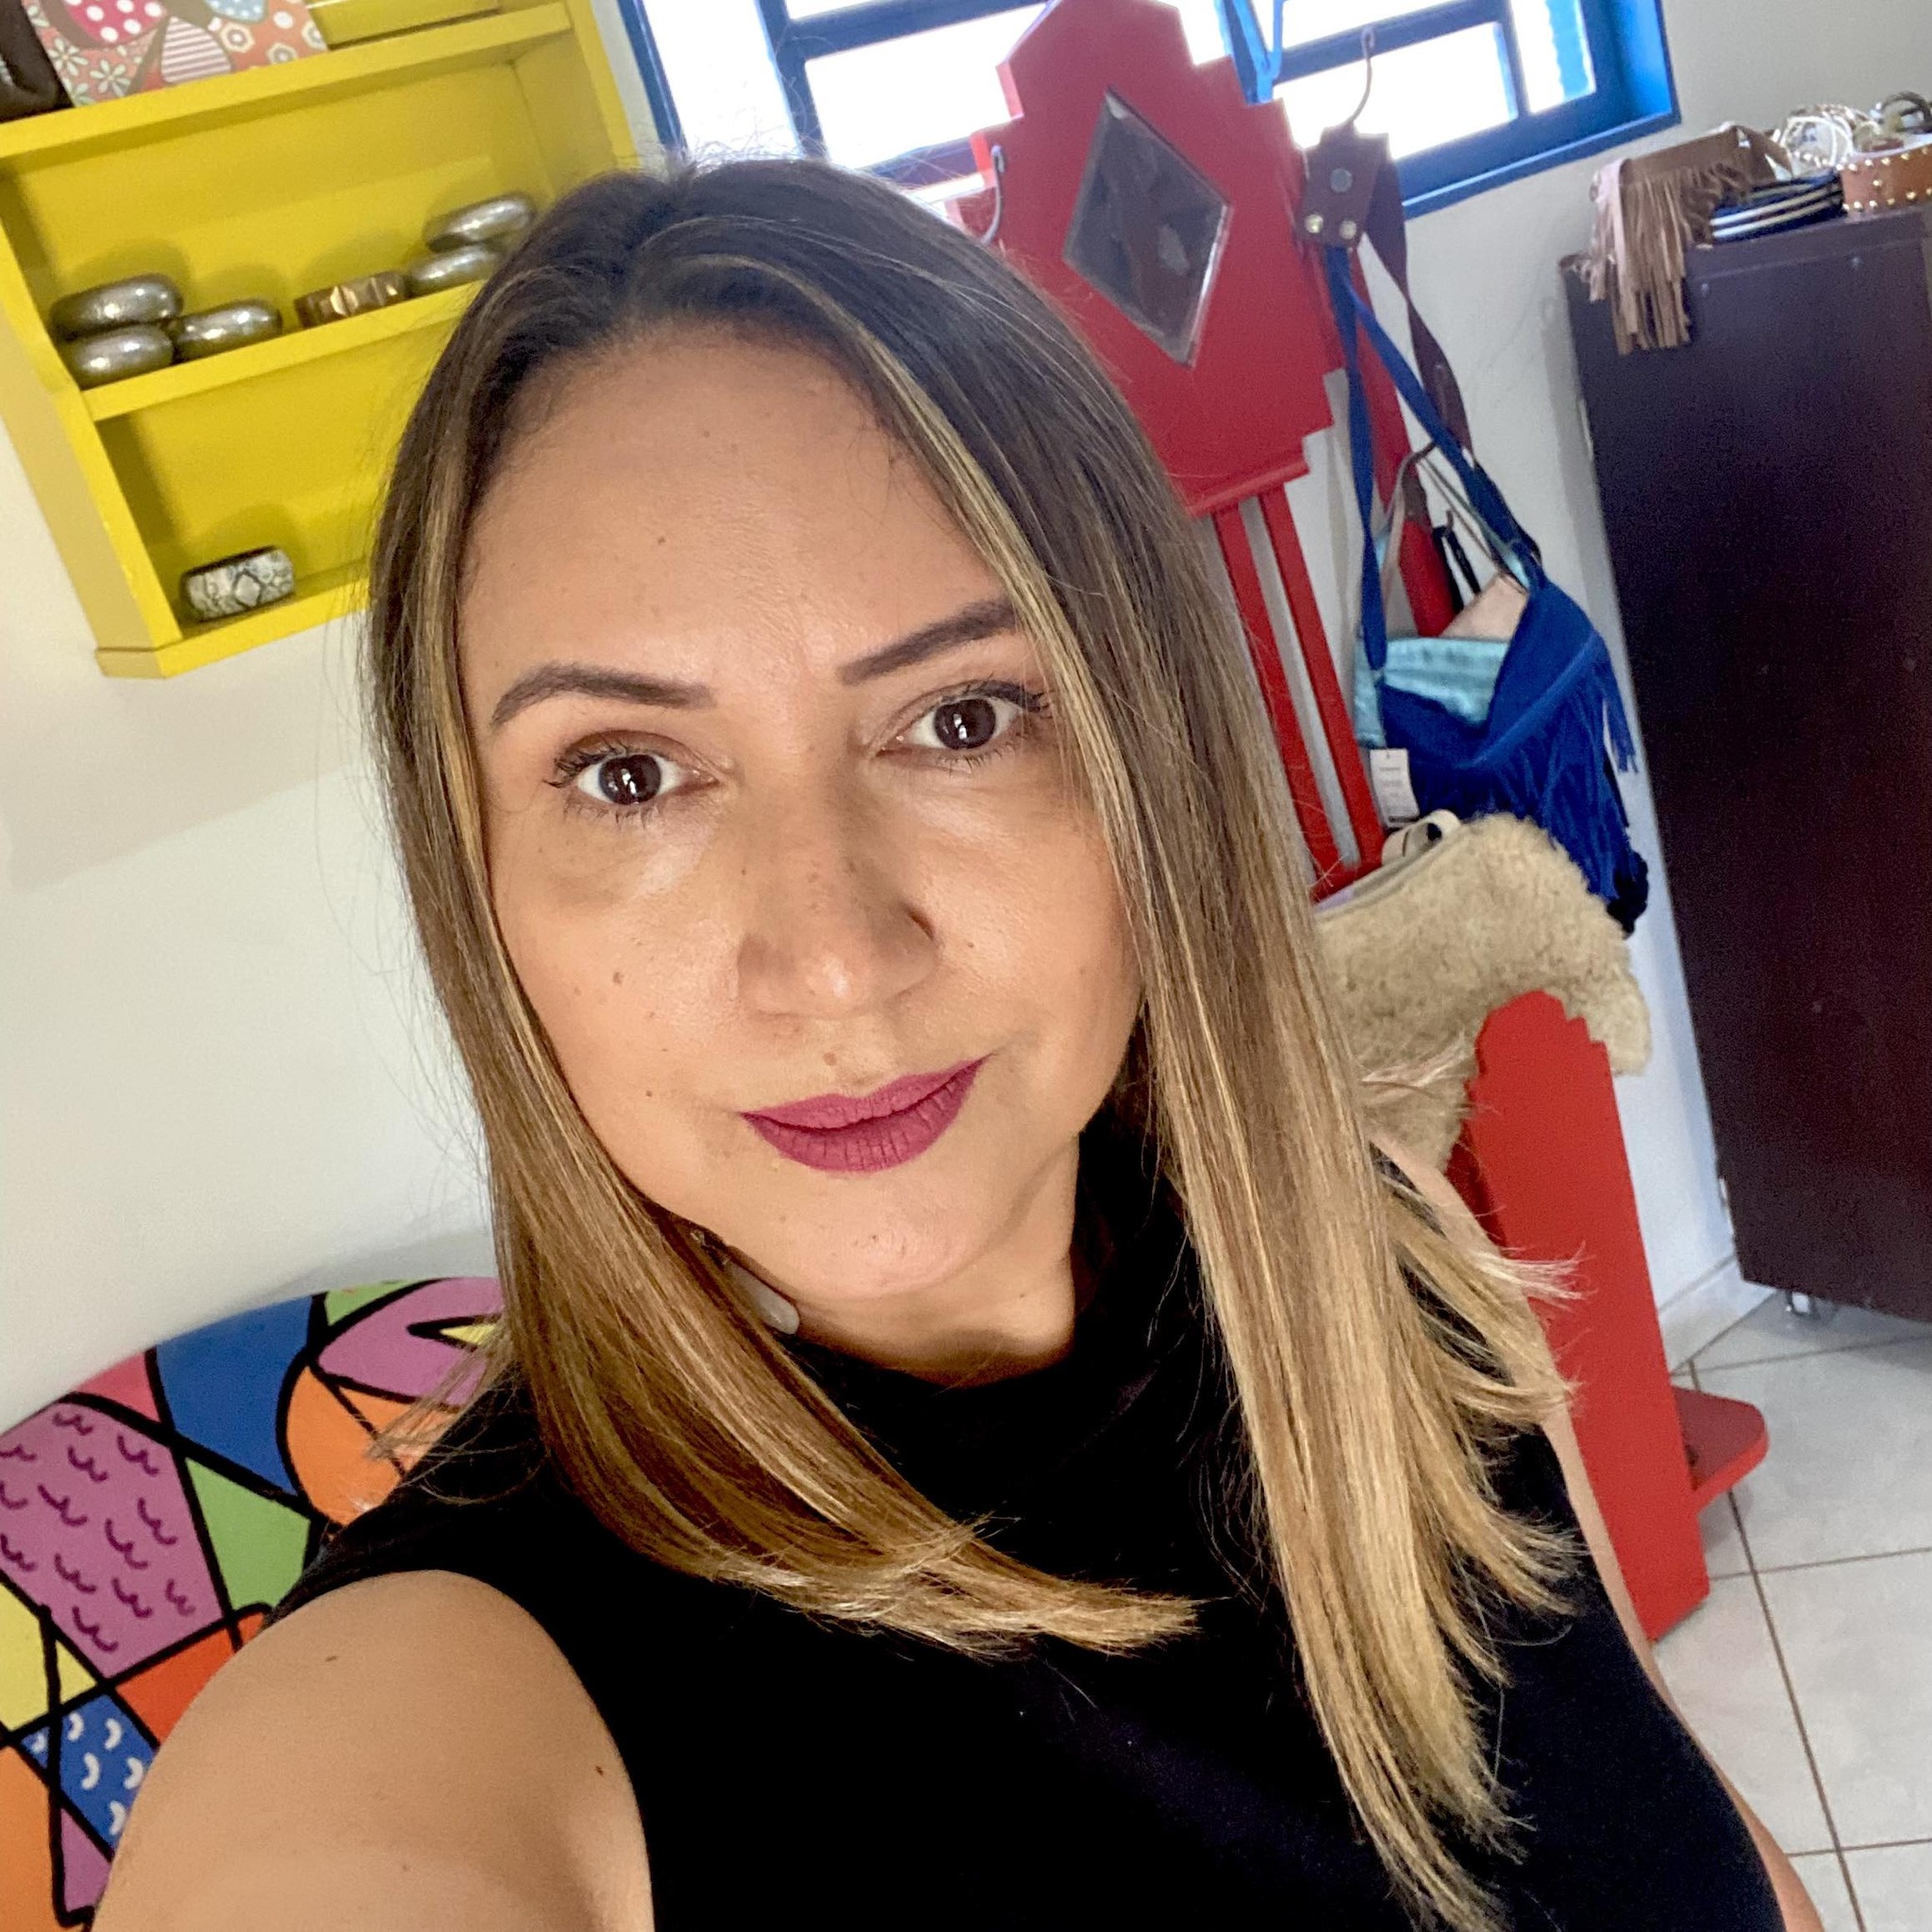 Geente, olha quem está fazendo aniversário hoje: Cristina de Fátima Rodrigues Proprietária do Brechó Recharme